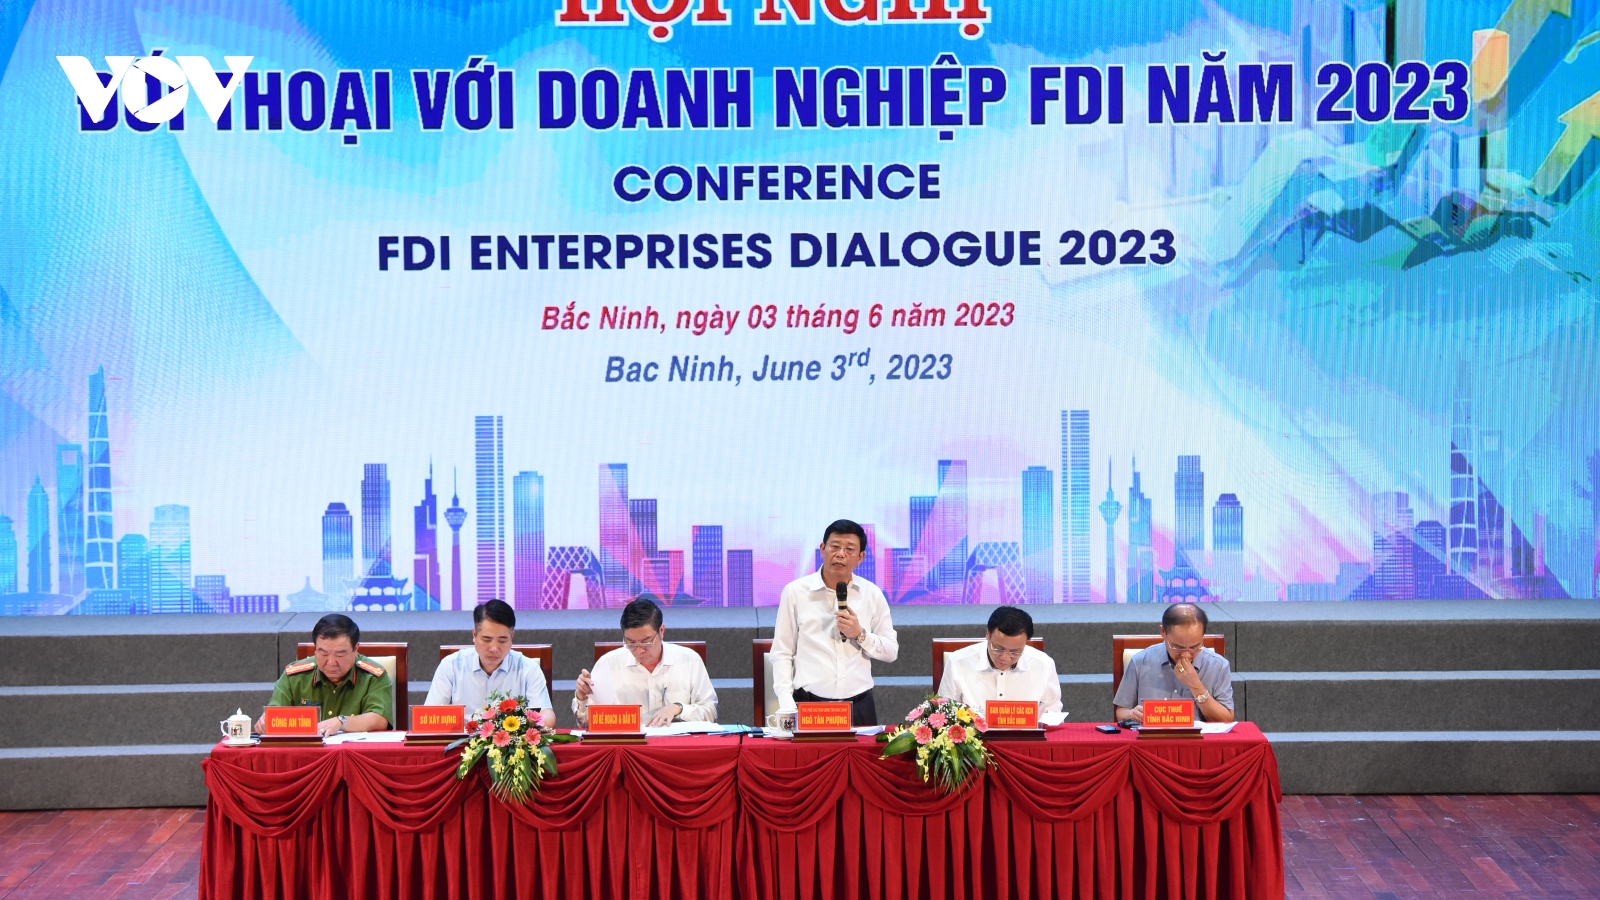 Bắc Ninh đối thoại, tháo gỡ khó khăn cho các doanh nghiệp FDI